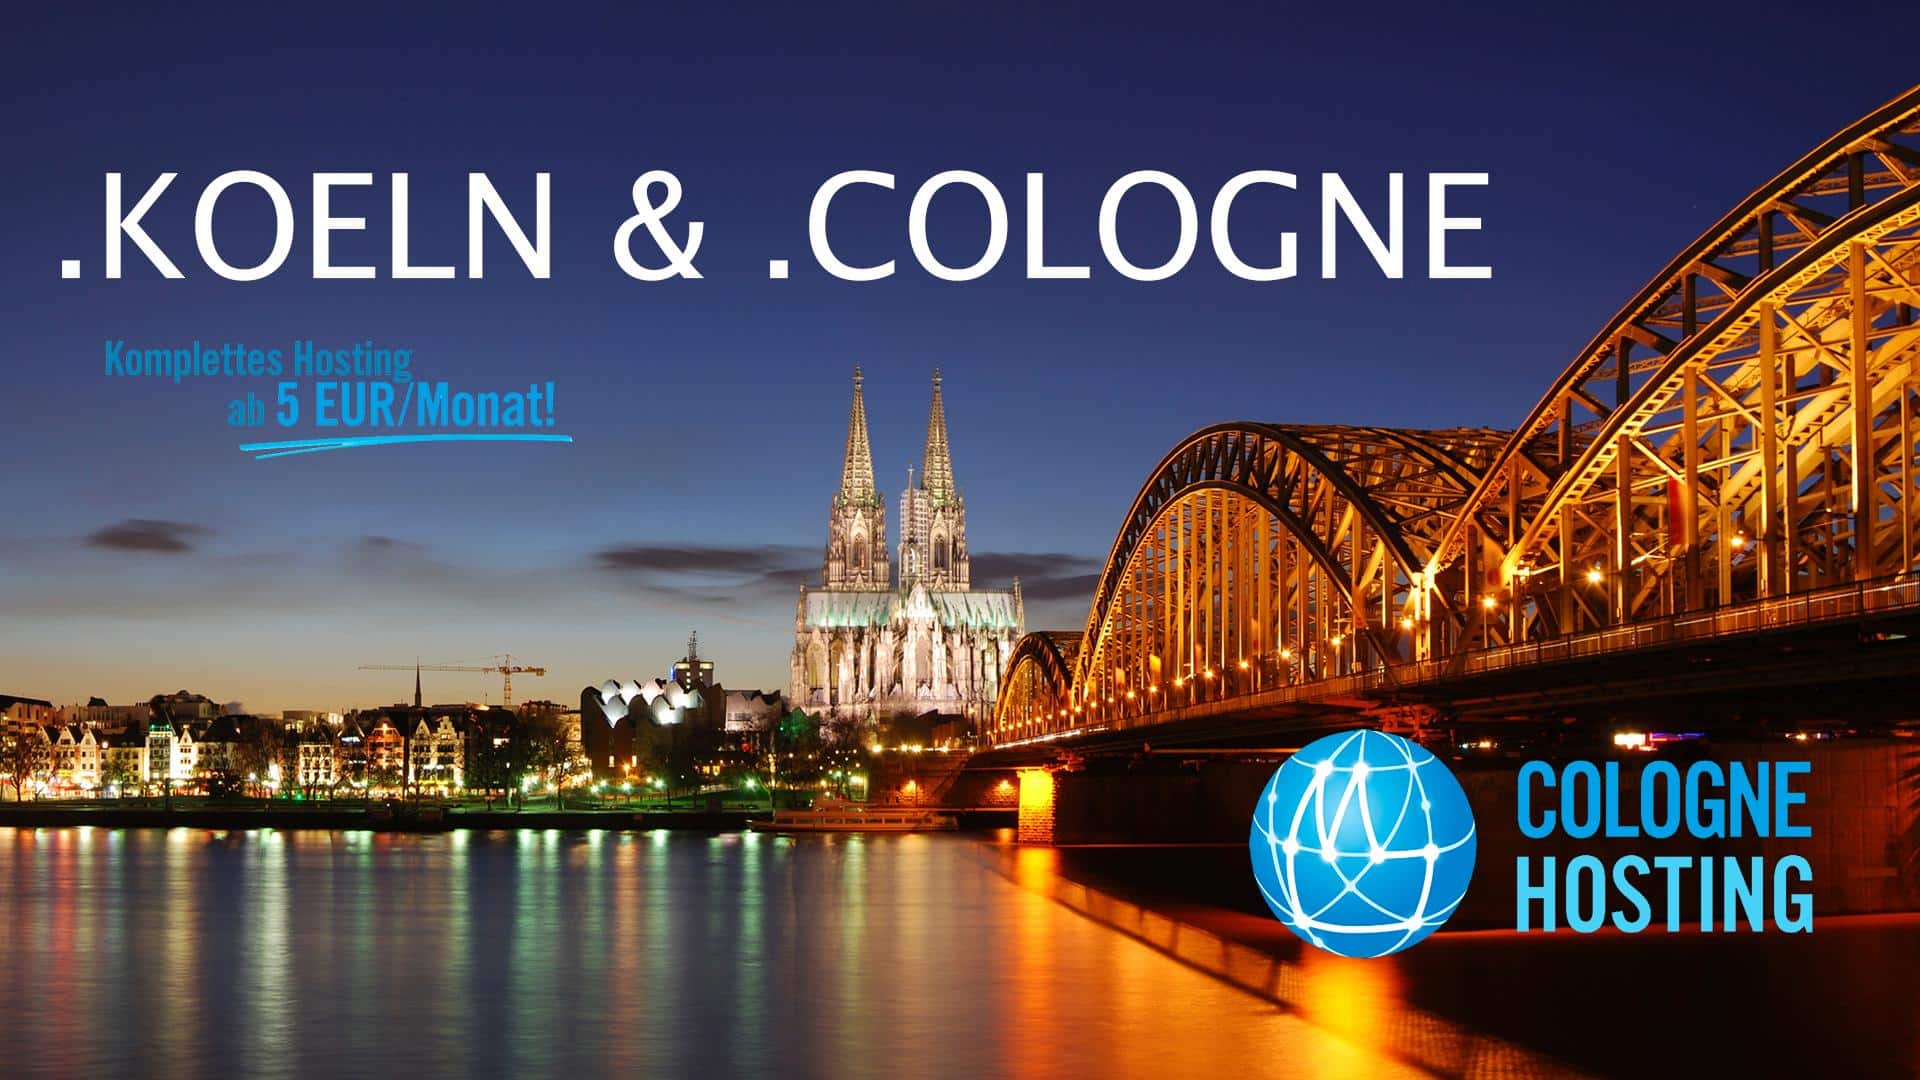 (c) Cologne.hosting